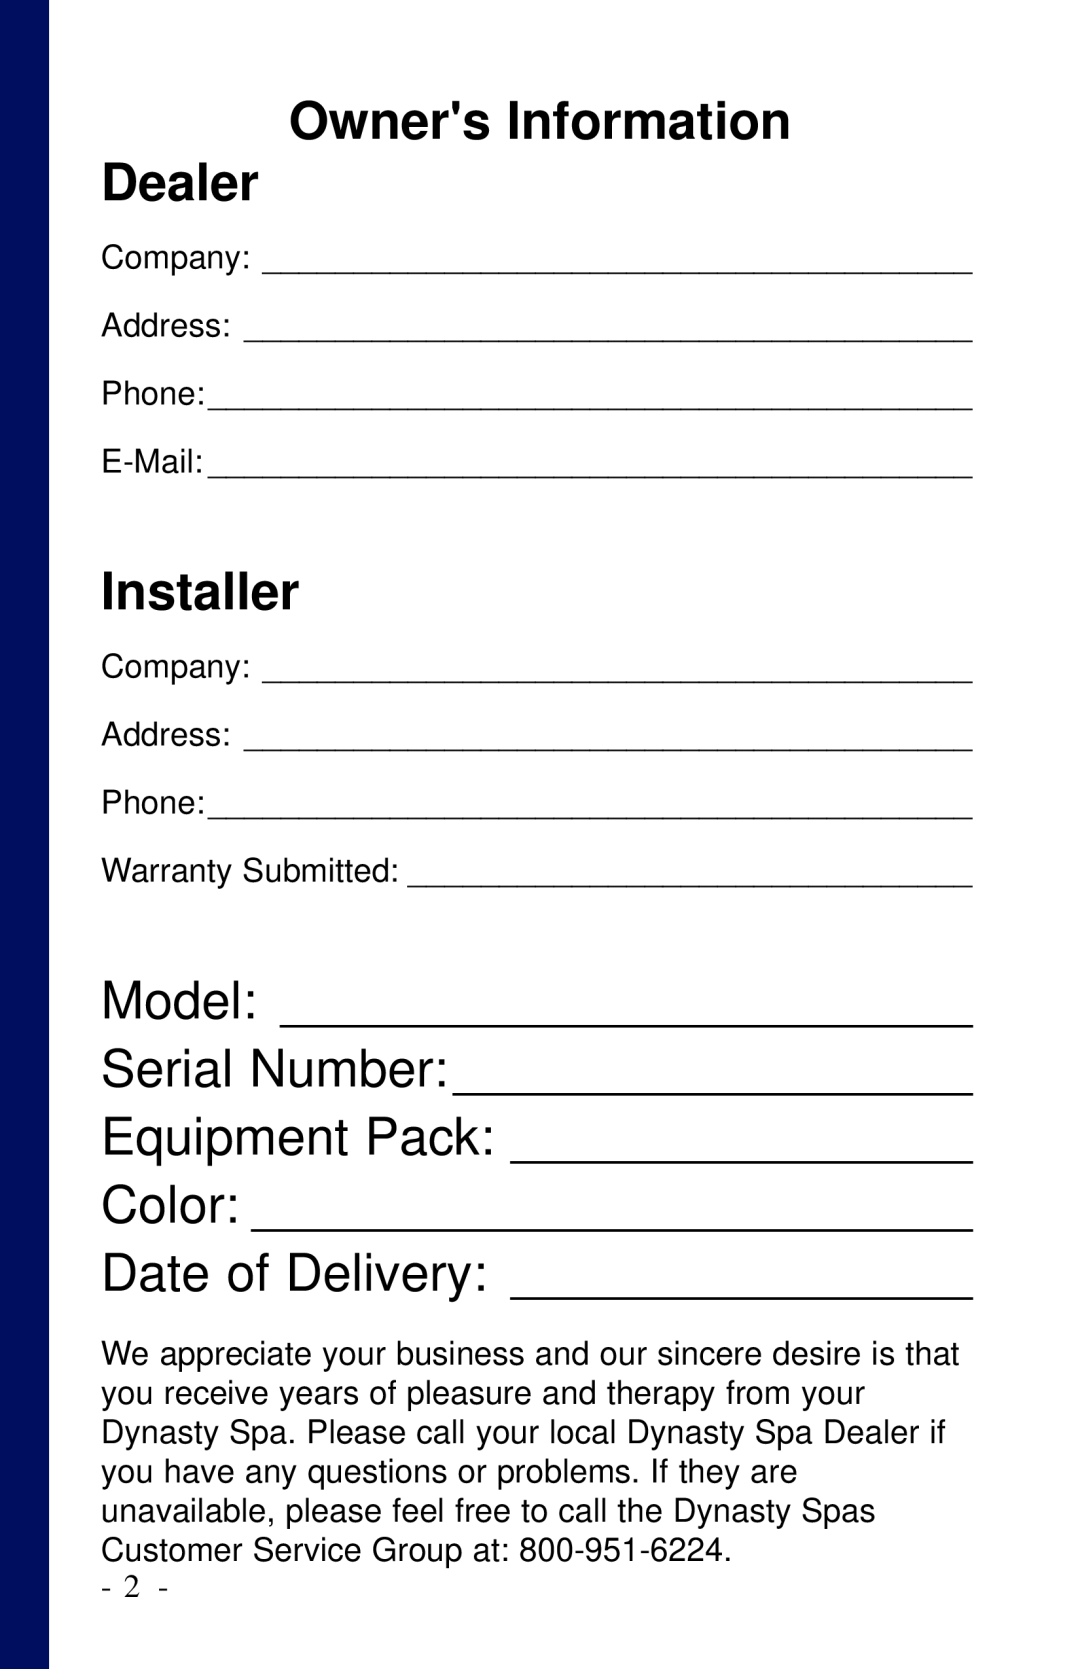 Dynasty Spas 2006 Dealer Owners Information, Installer, Model, Serial Number, Equipment Pack, Color, Date of Delivery 